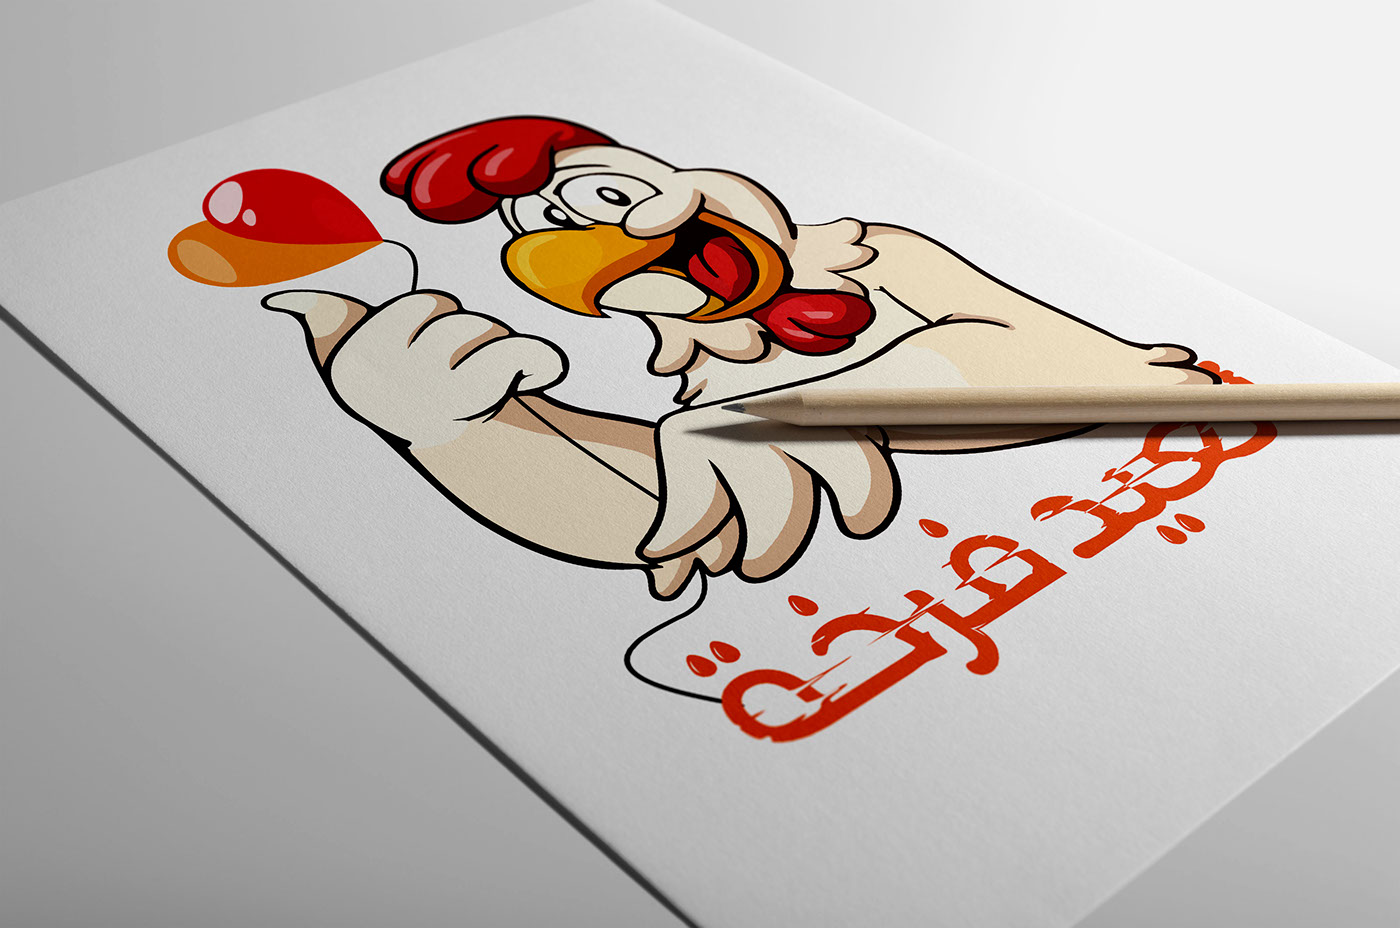 العيد فرخه hen chicken Holiday Eid happy year